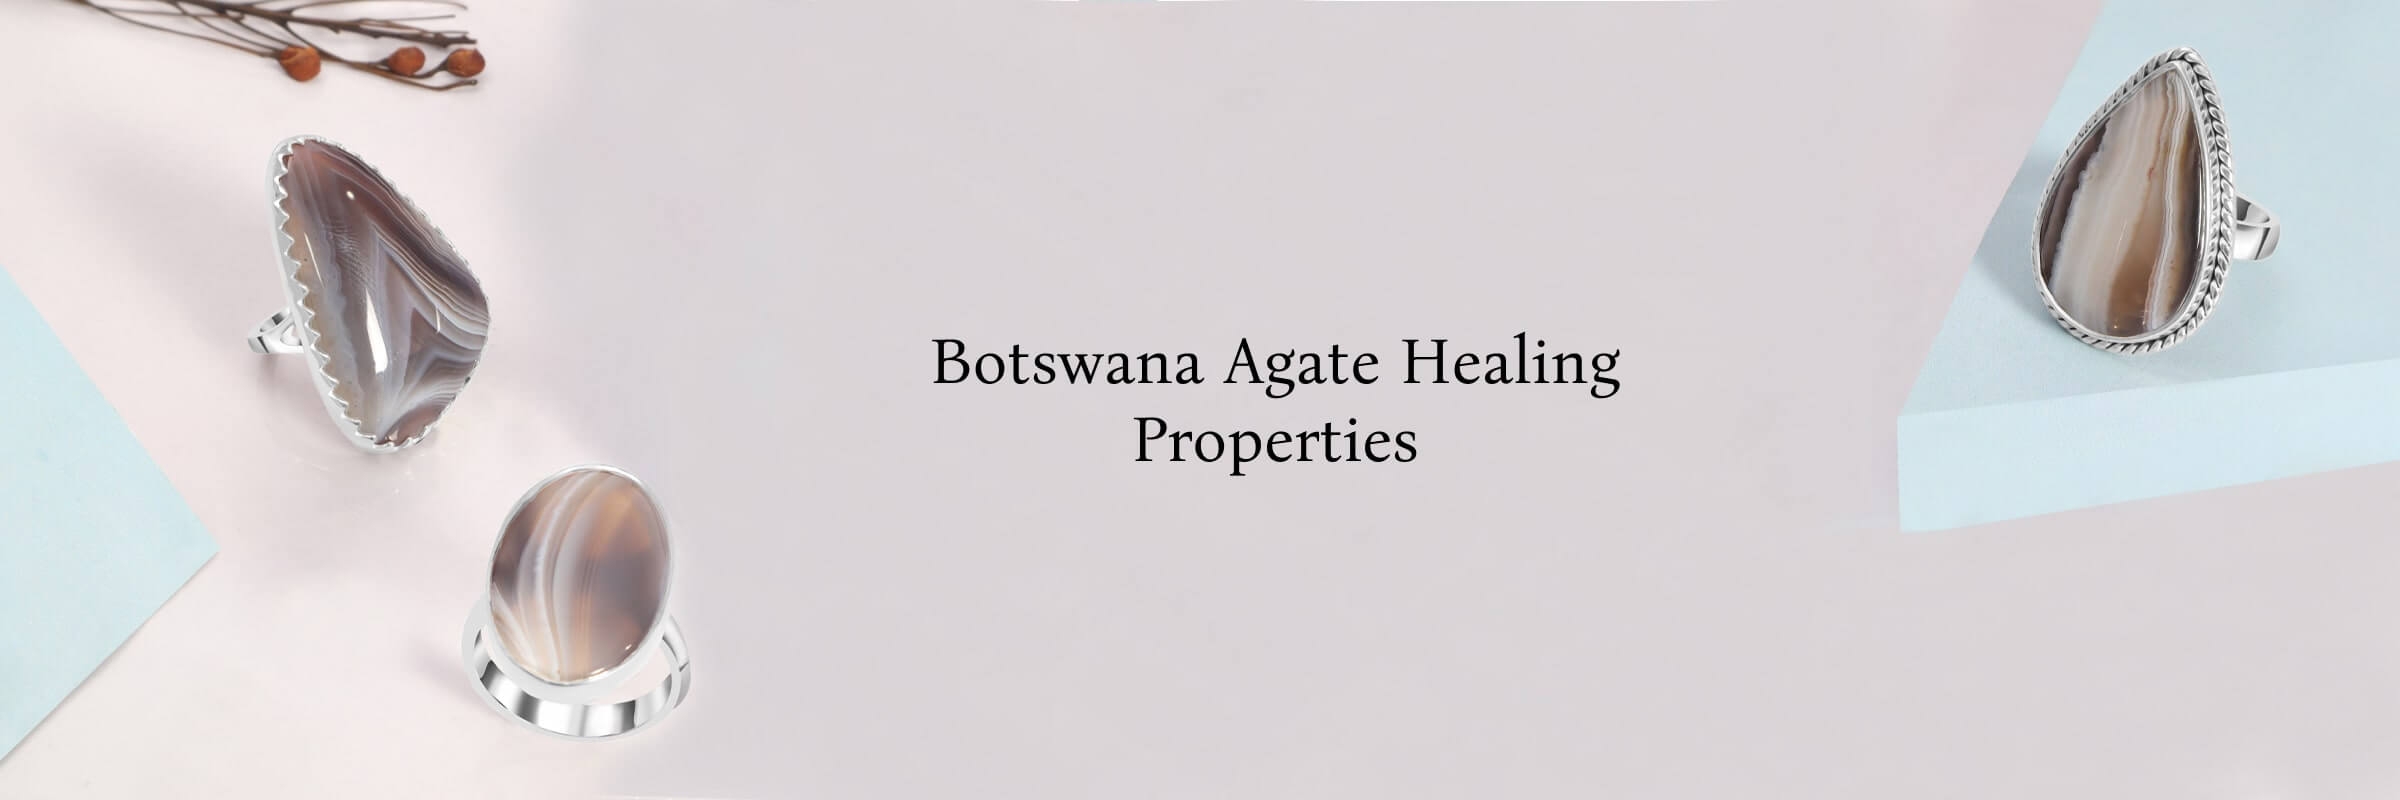 Botswana Agate Healing Properties